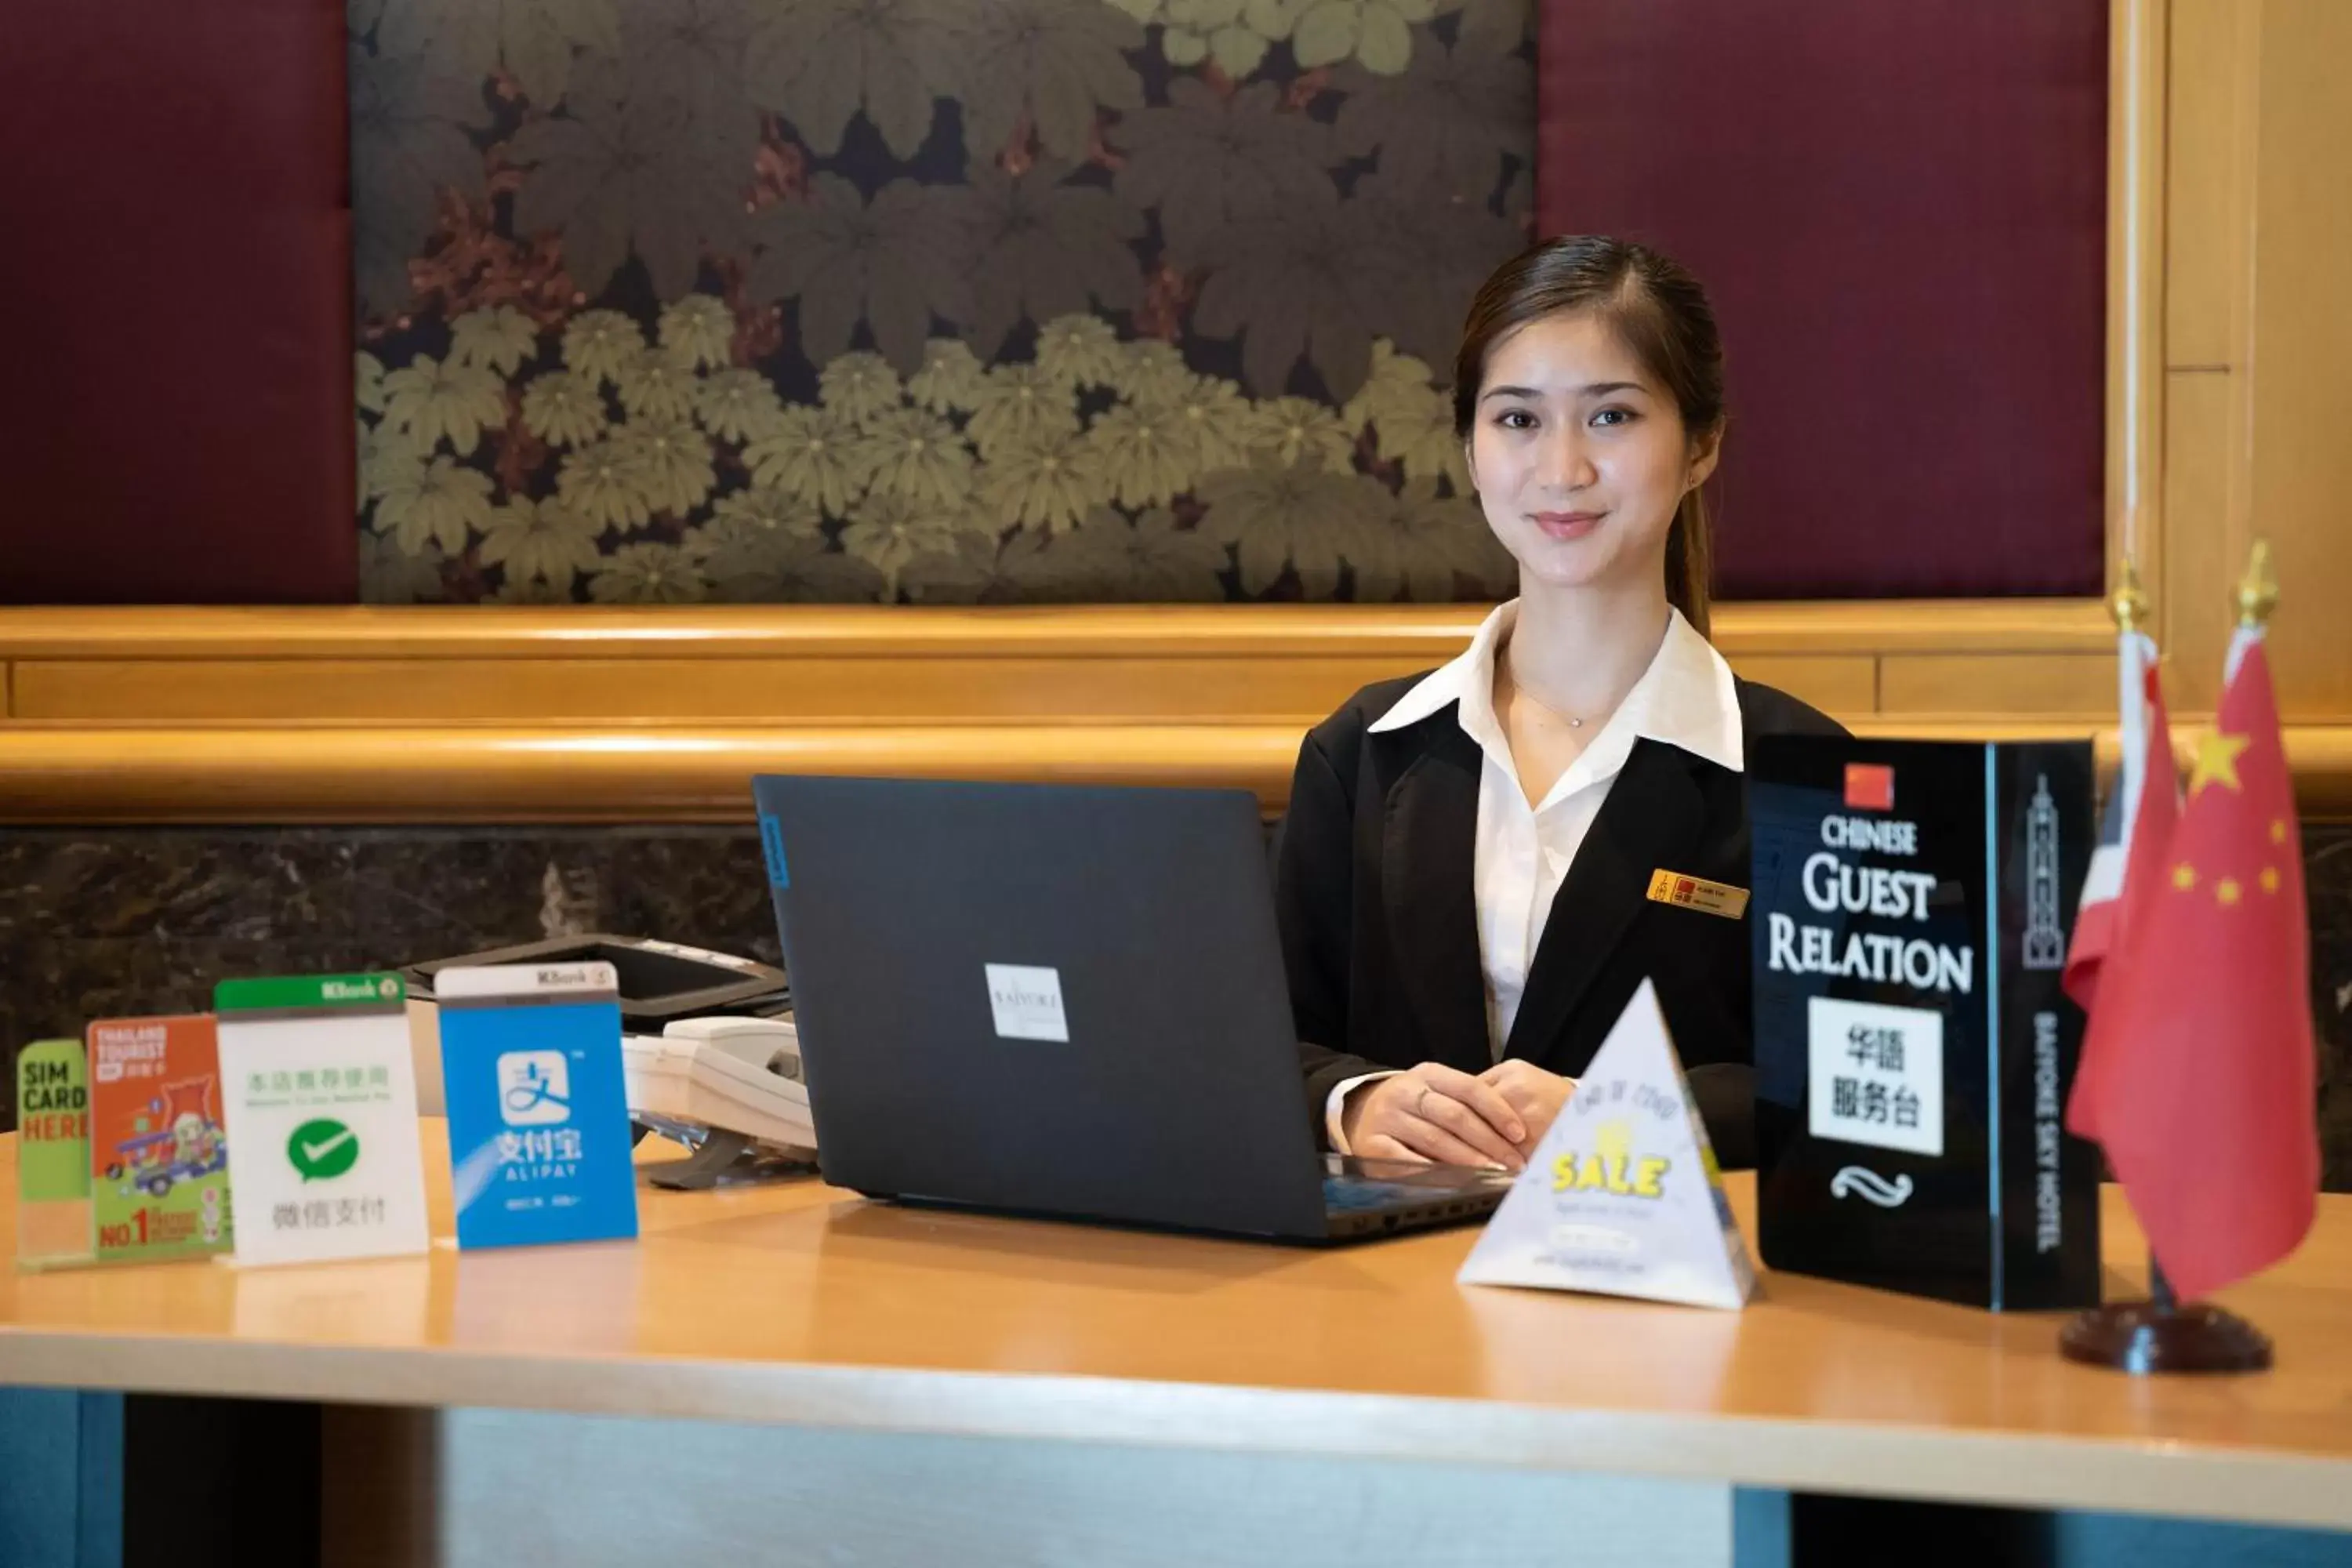 Staff, Lobby/Reception in Baiyoke Sky Hotel